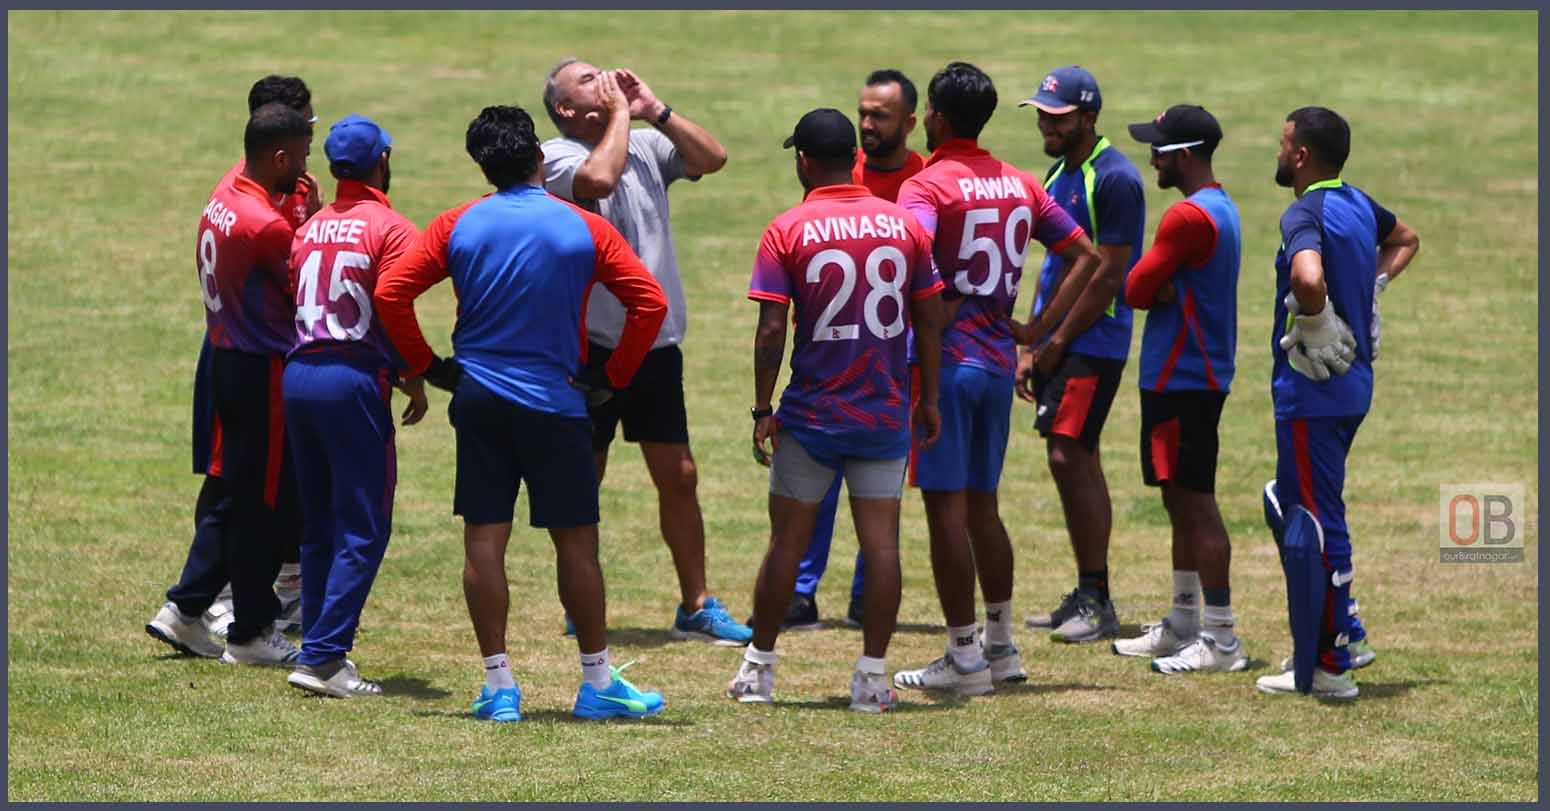 क्यानडा भ्रमणमा रहेको नेपाली क्रिकेट टिम दोस्रो अभ्यास खेलमा बिजयी